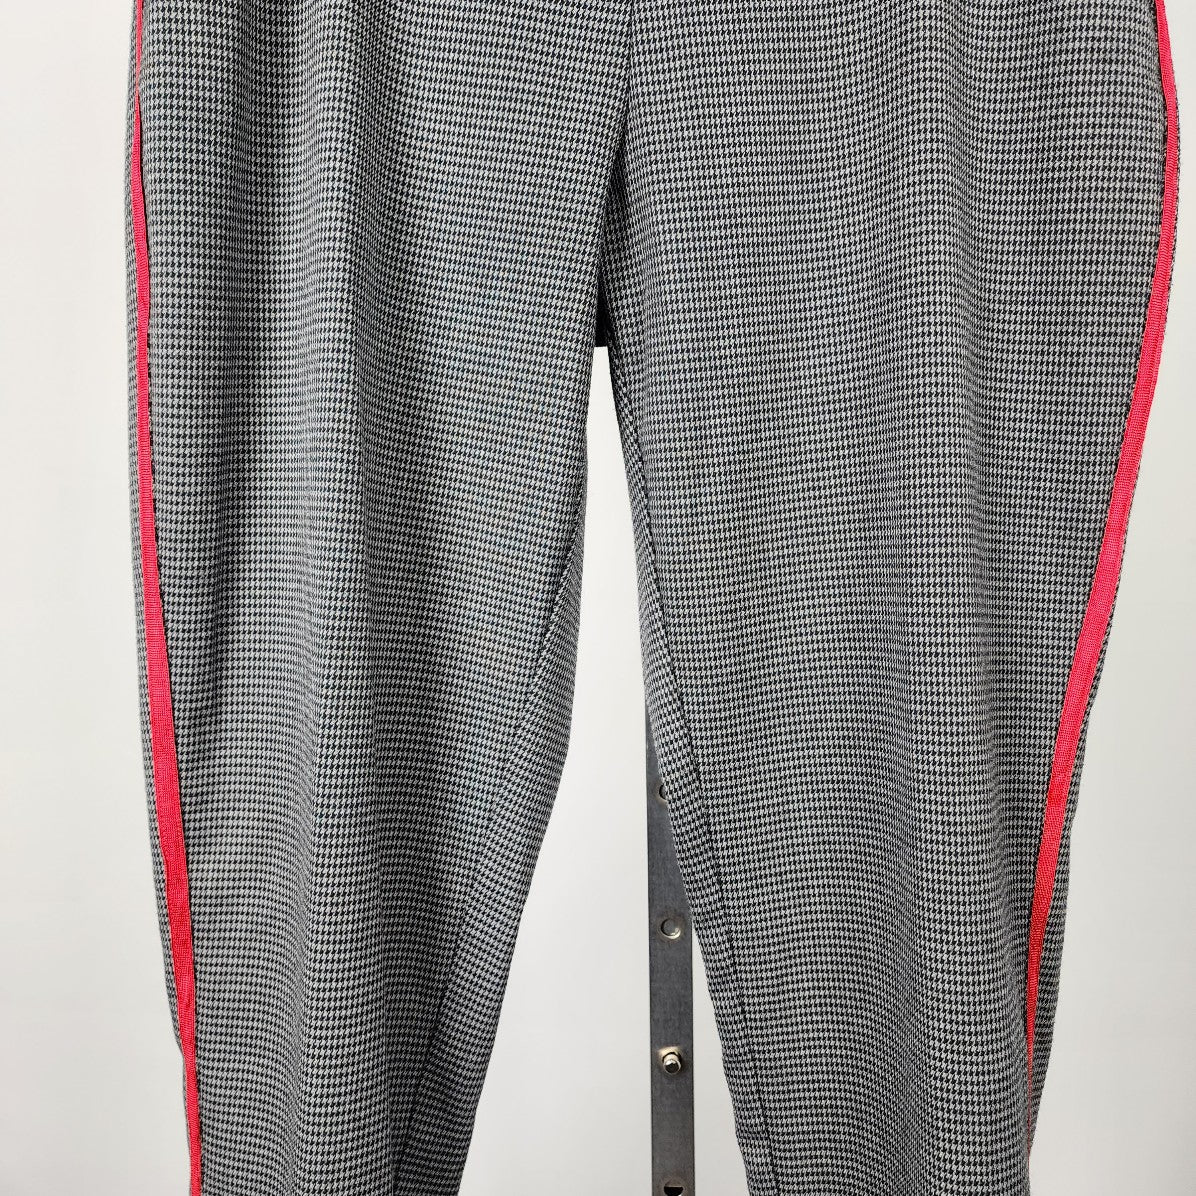 Highline Black & White Checkered Red Stripe Pants Size 14